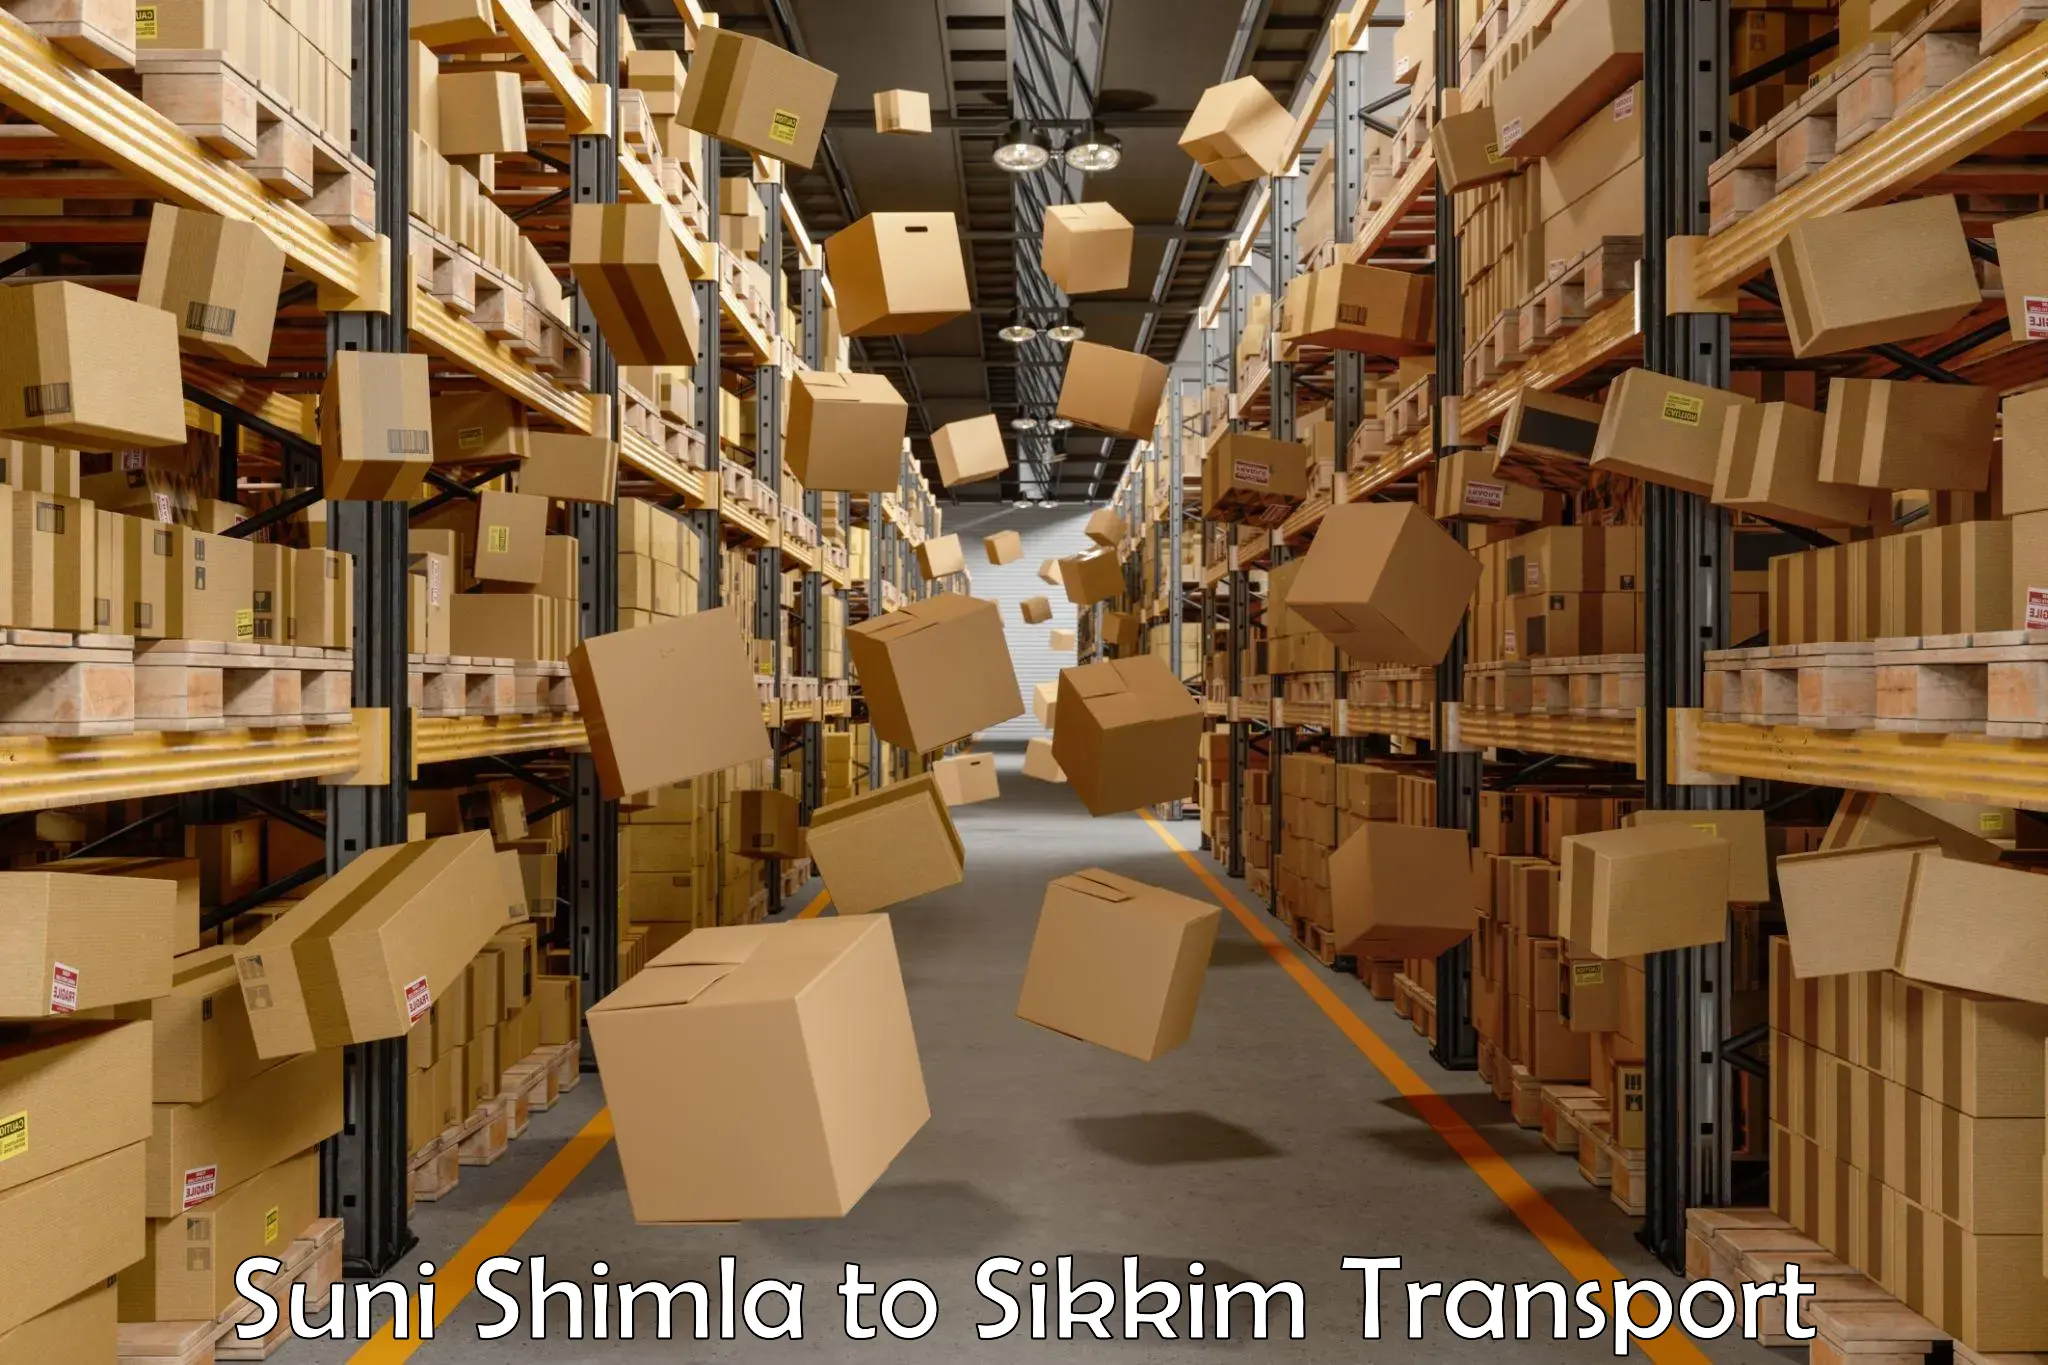 Pick up transport service Suni Shimla to Sikkim